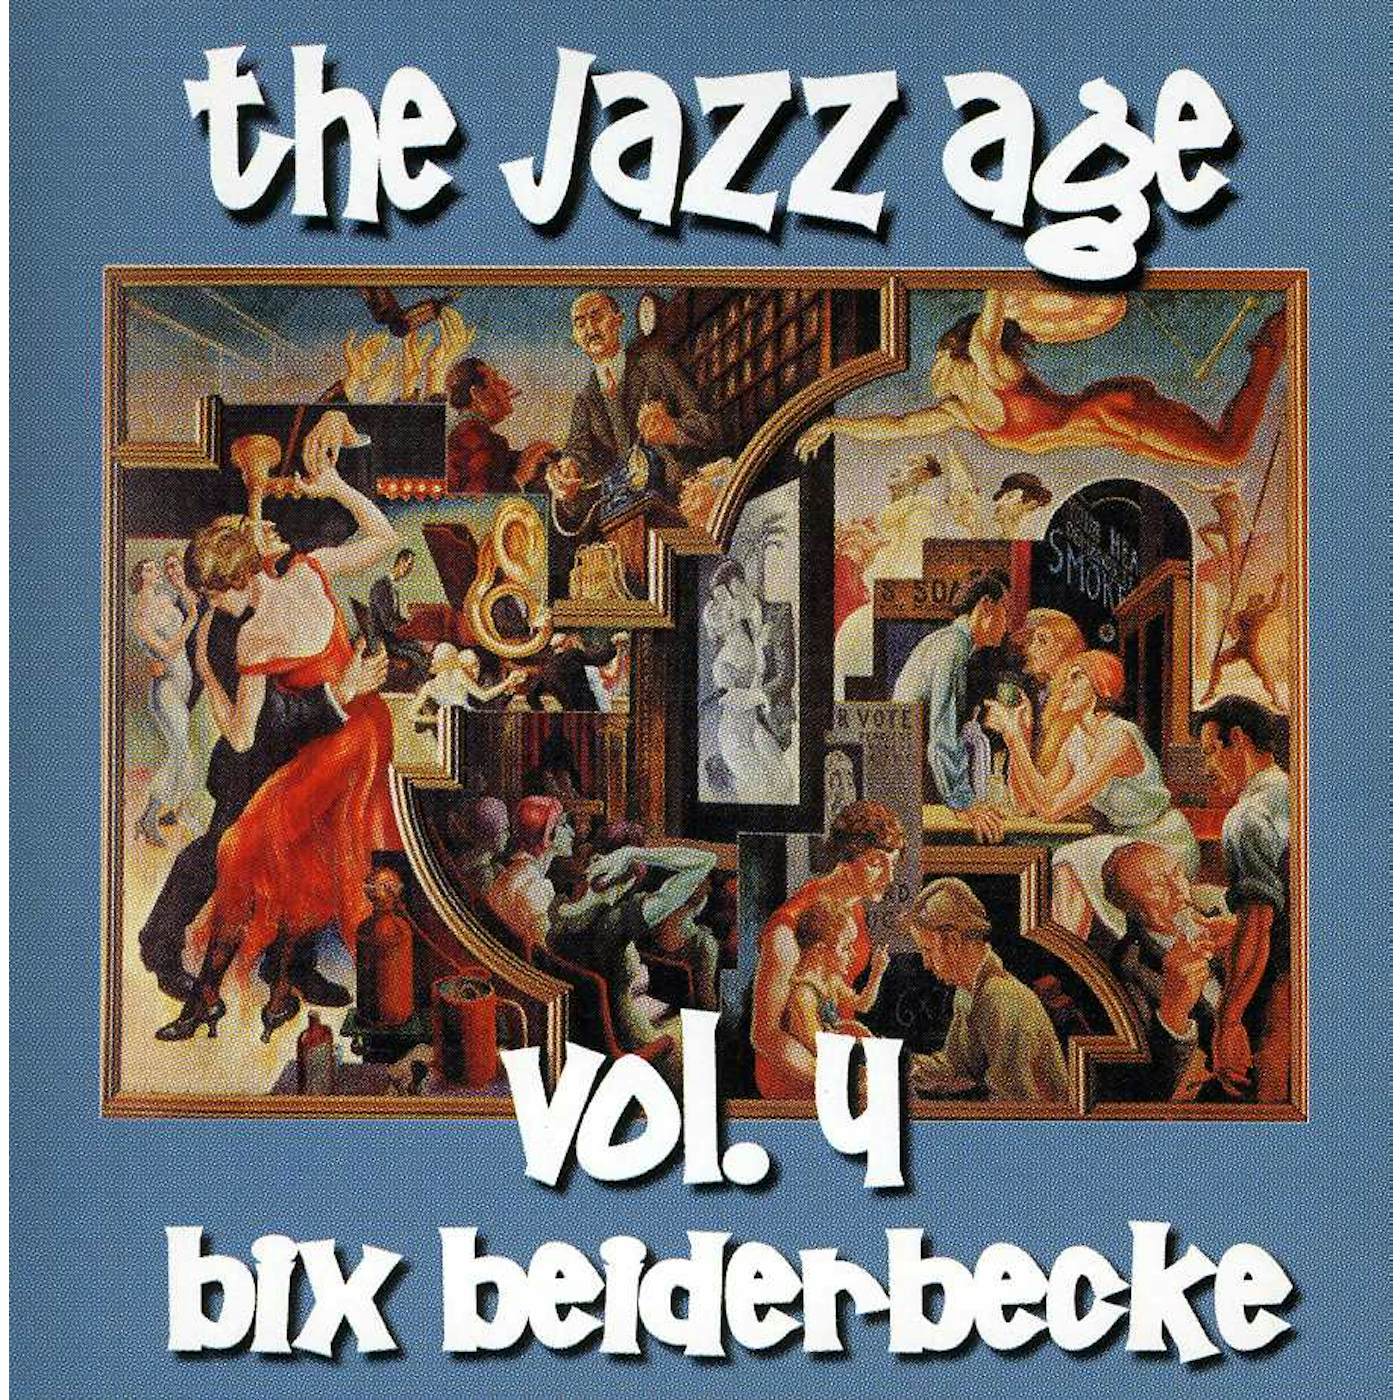 Bix Beiderbecke JAZZ AGE 4 CD